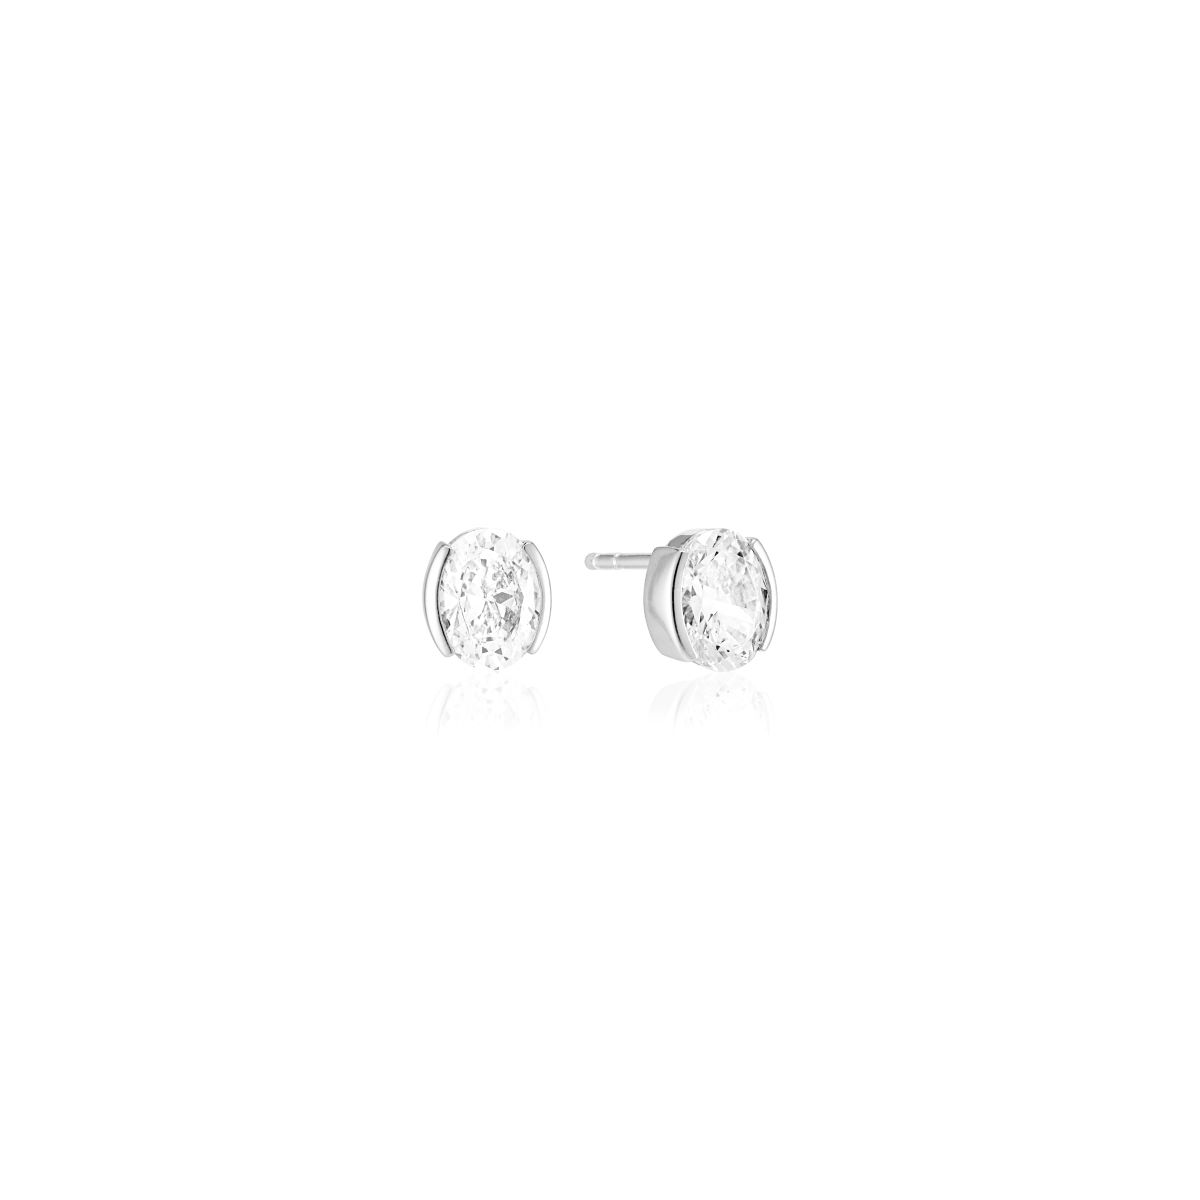 Sif Jakobs Ellisse Carezza Earrings with White Zirconia - SJ-E2350-CZ